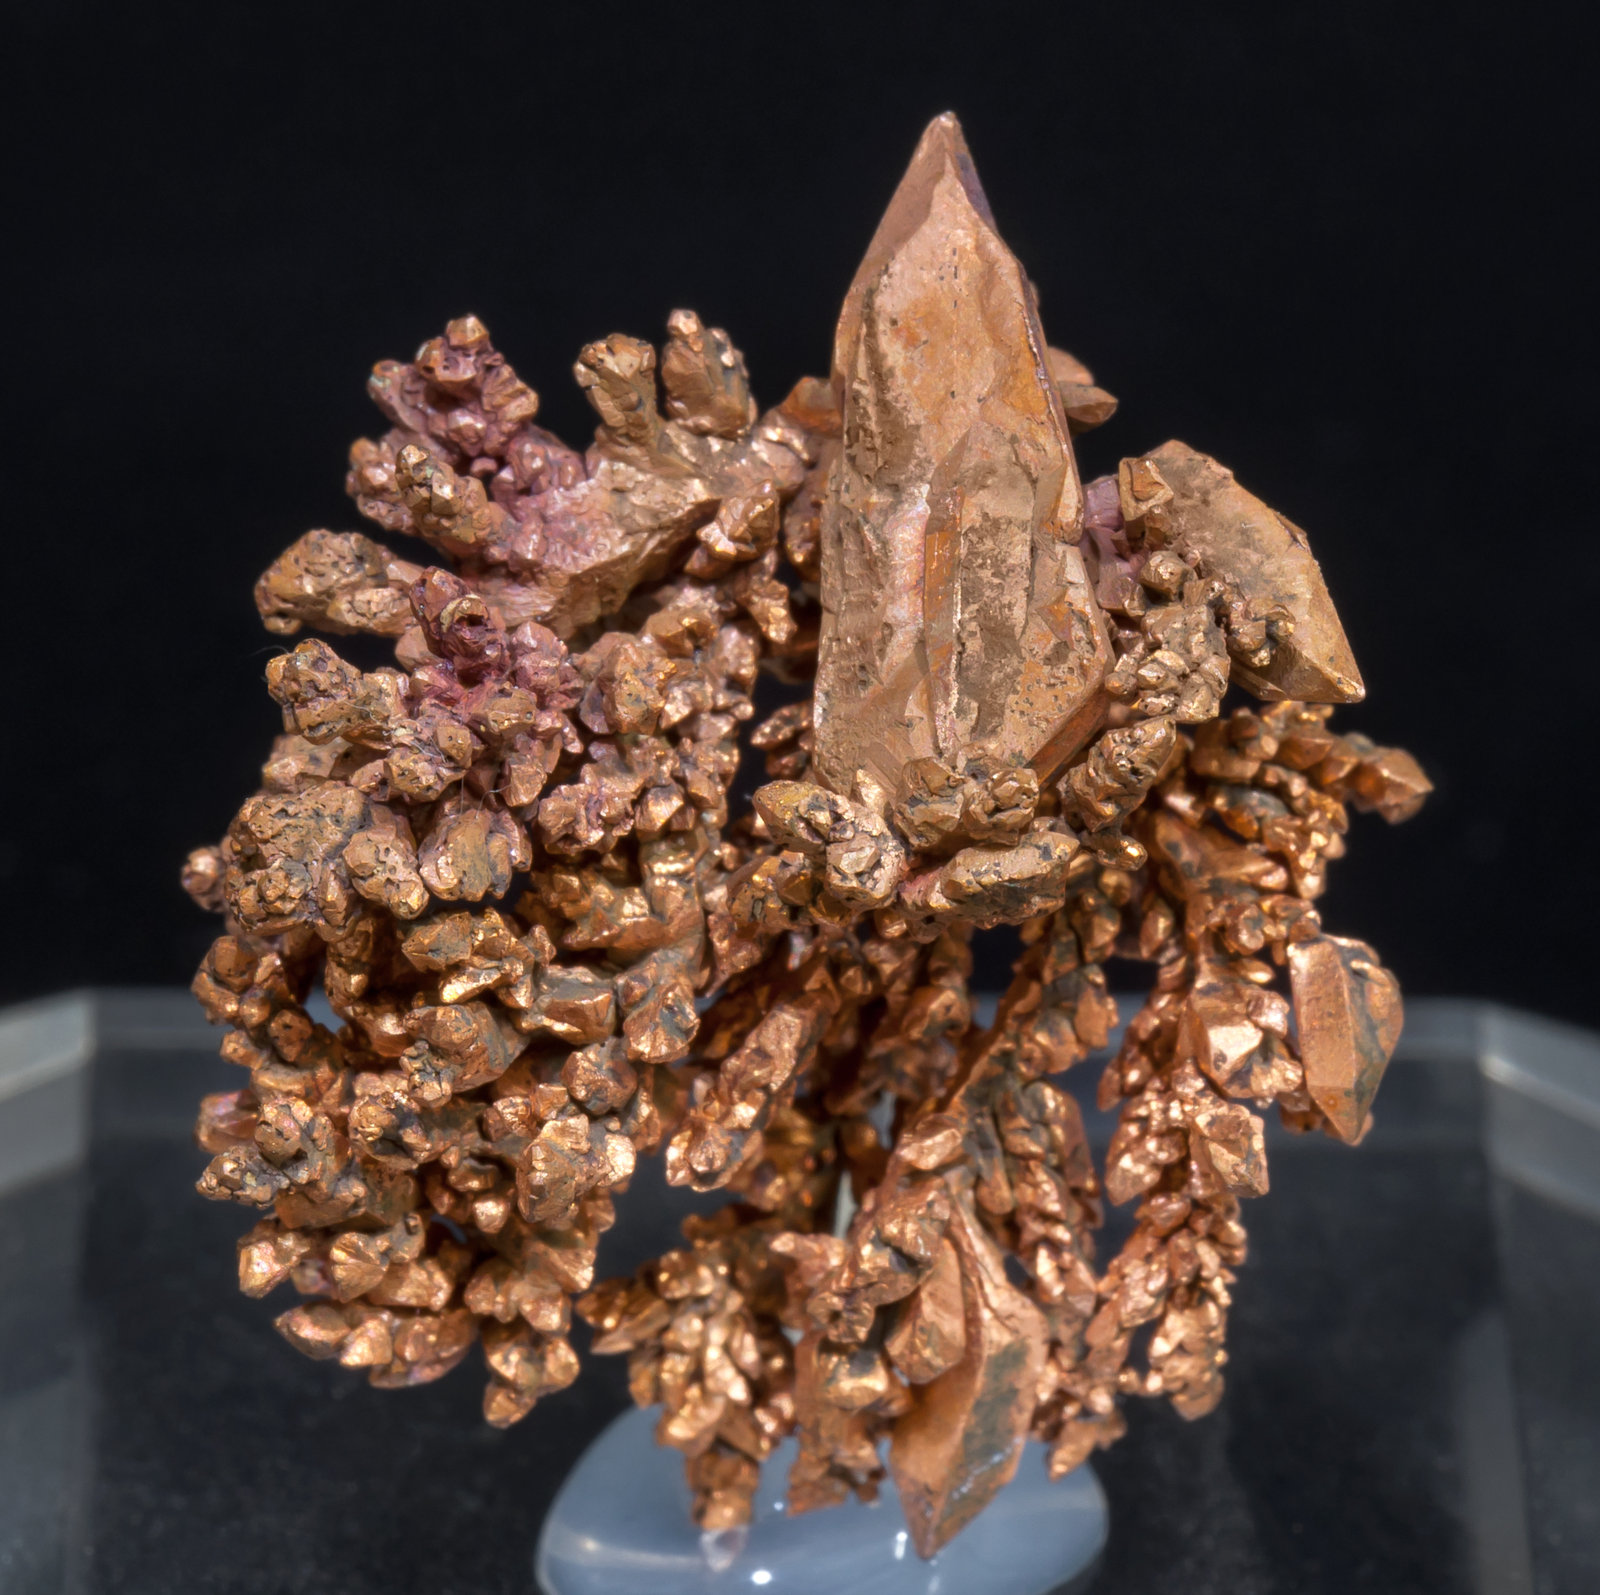 specimens/s_imagesAD1/Copper-TE48AD1f.jpg